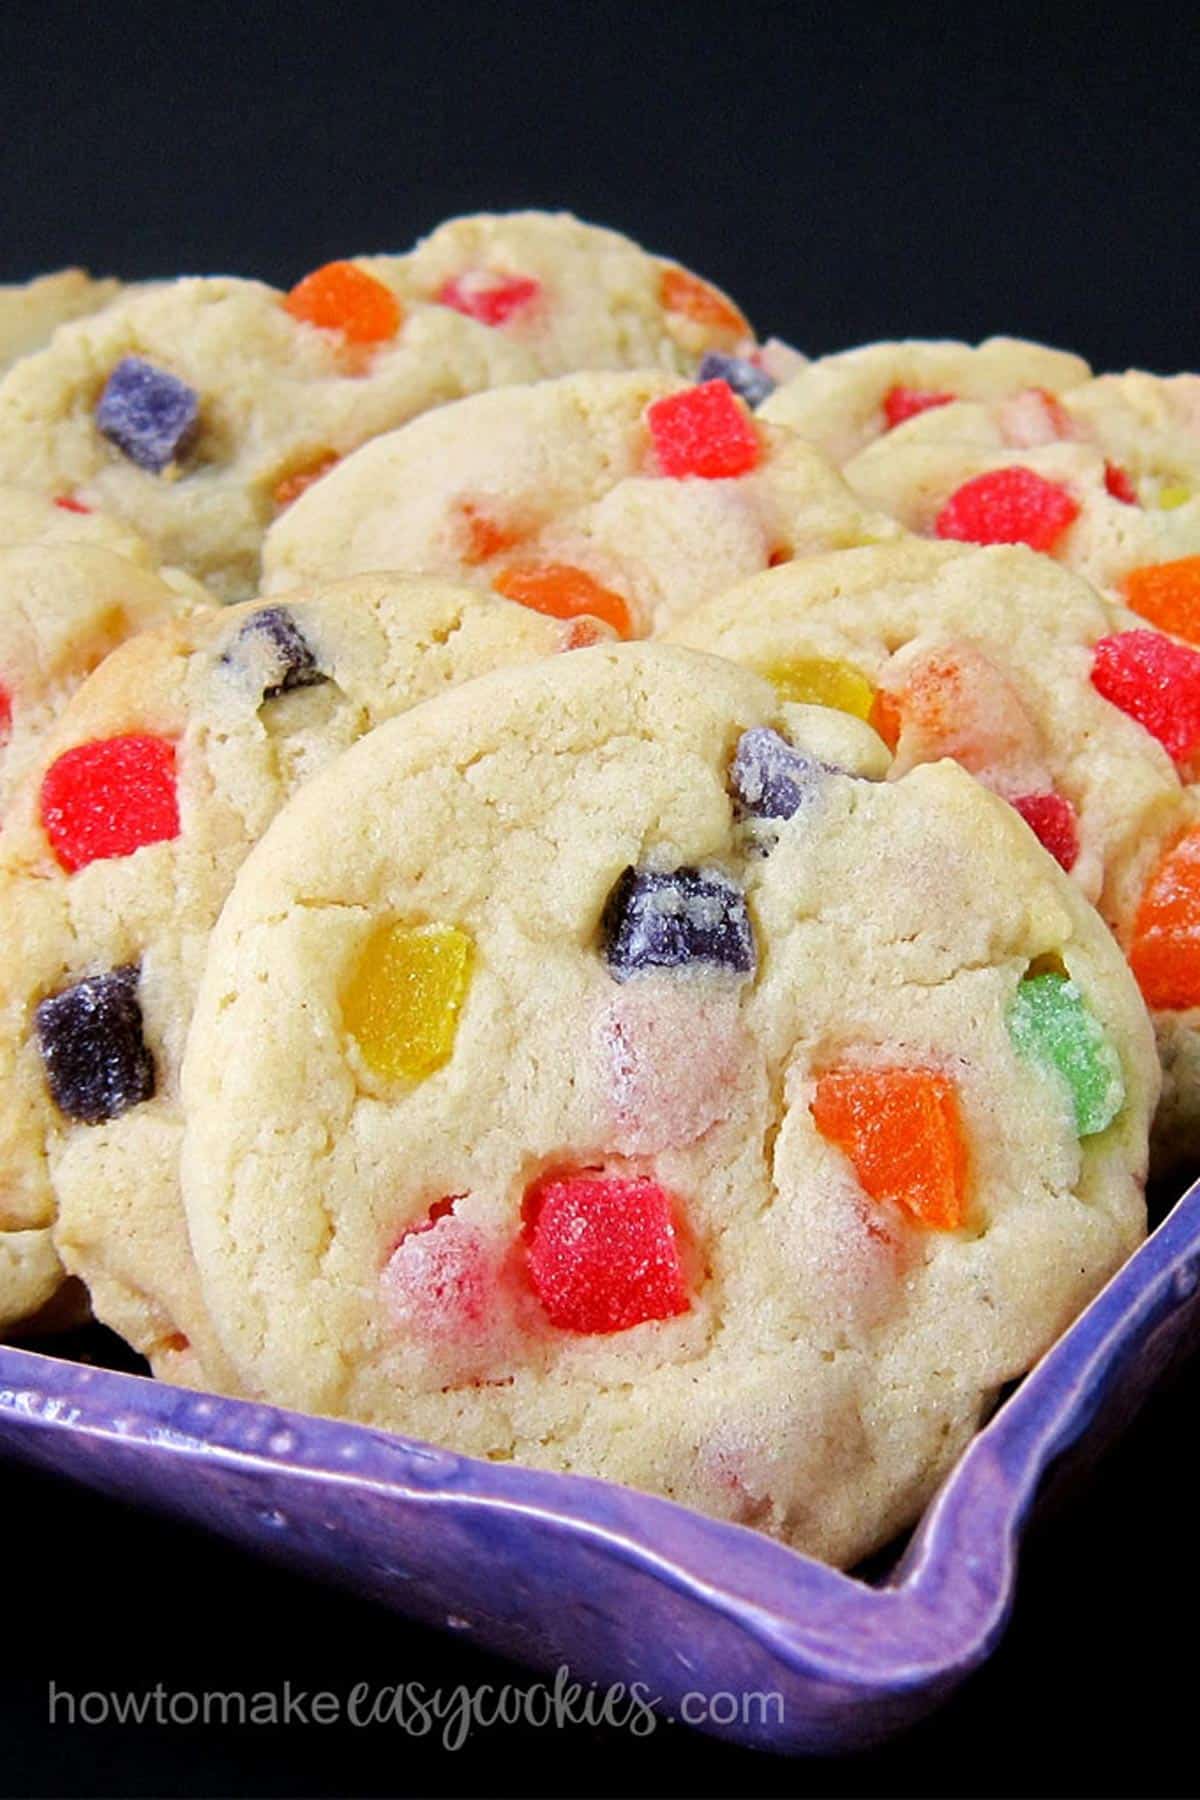 Gumdrop cookies filled with fruit-flavored gumdrops.